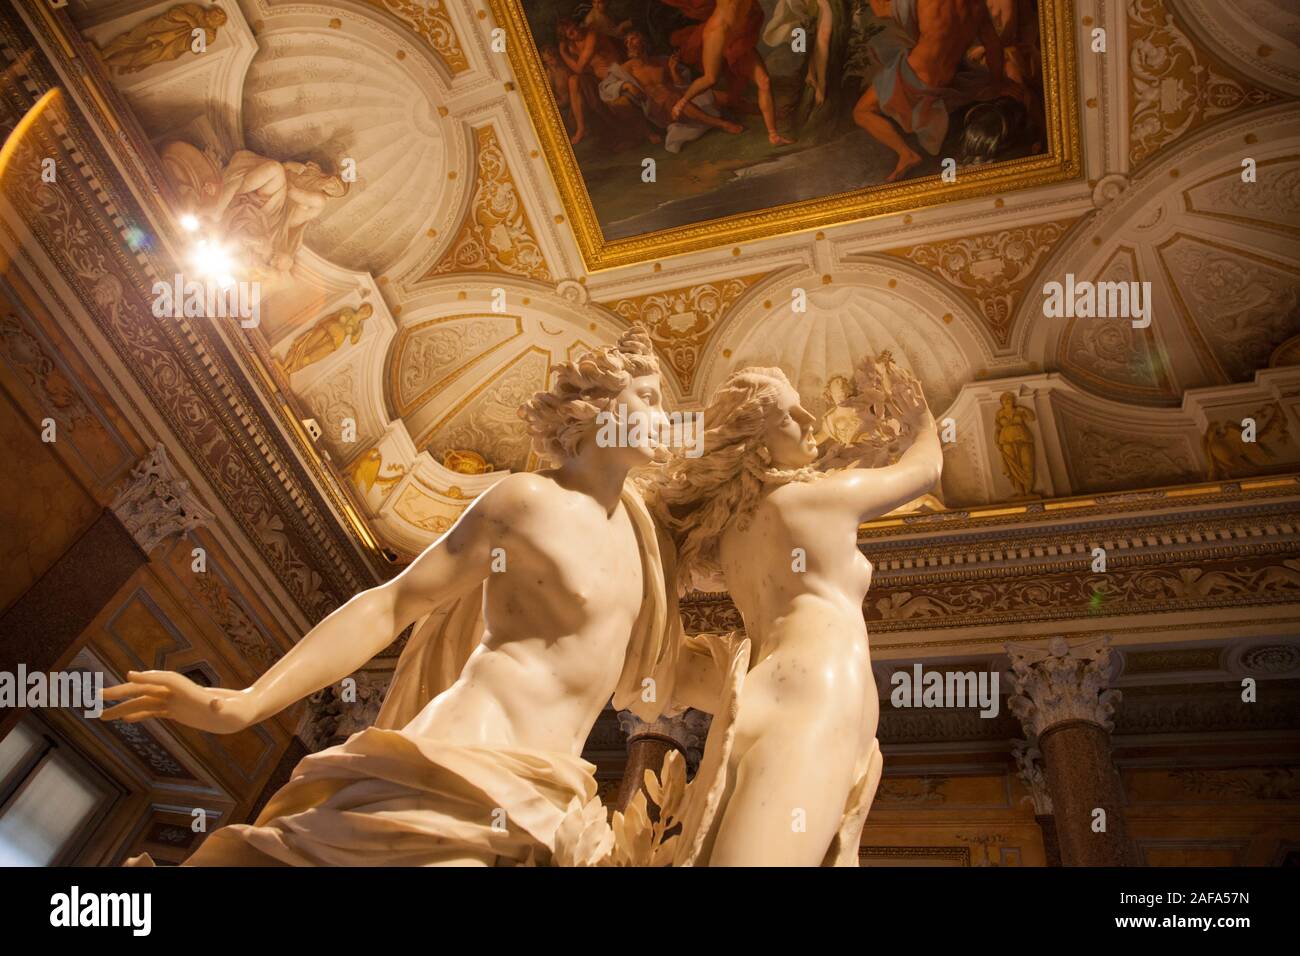 Apollon et Daphné du Bernin dans la Galleria Borghese (Galerie Borghèse), Rome Banque D'Images